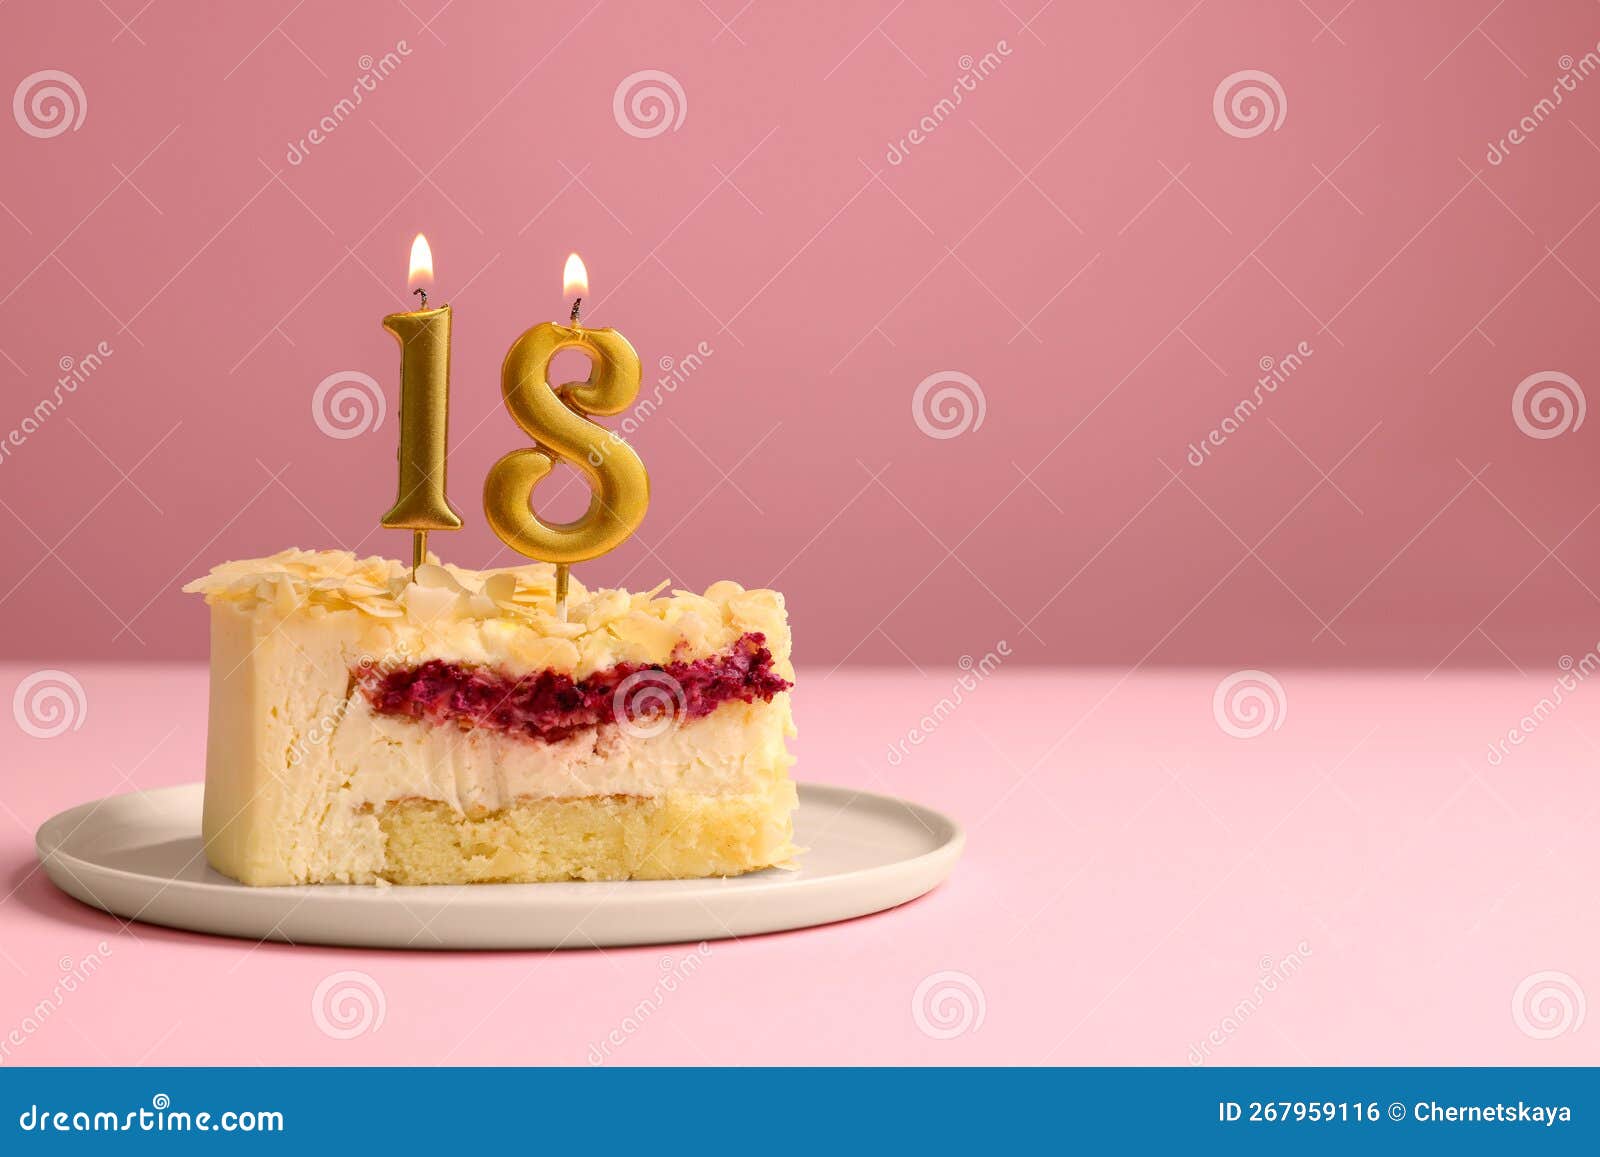 18 Cumpleaños Delicioso Pastel Con Velas En Forma De Número Para